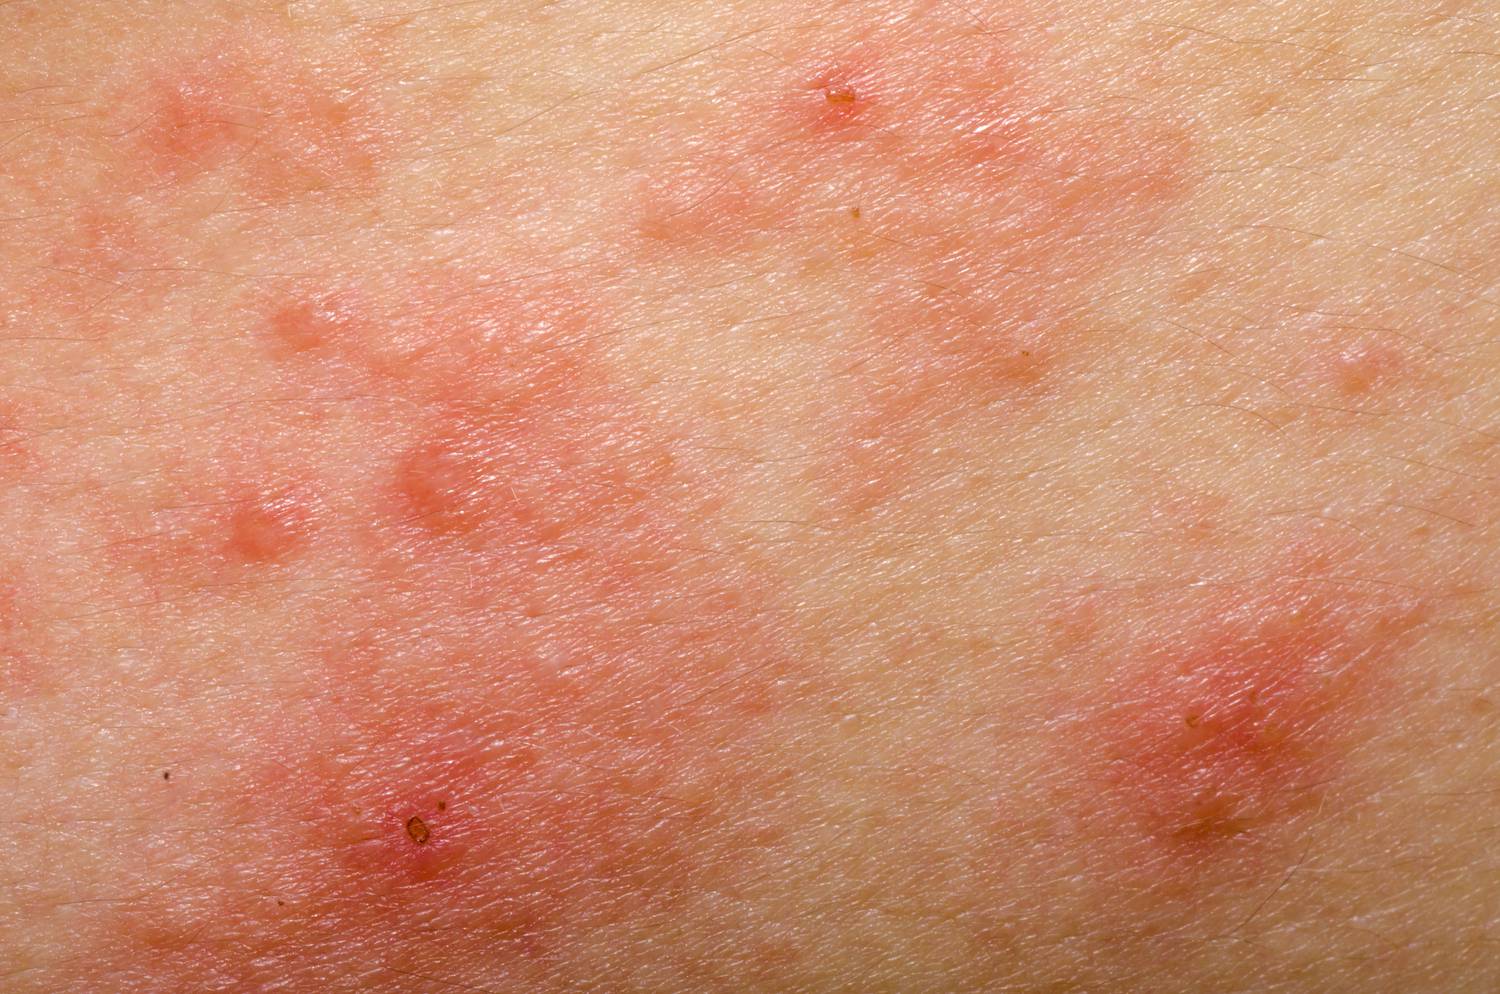 Milyen betegségre utalnak a vörös foltok?